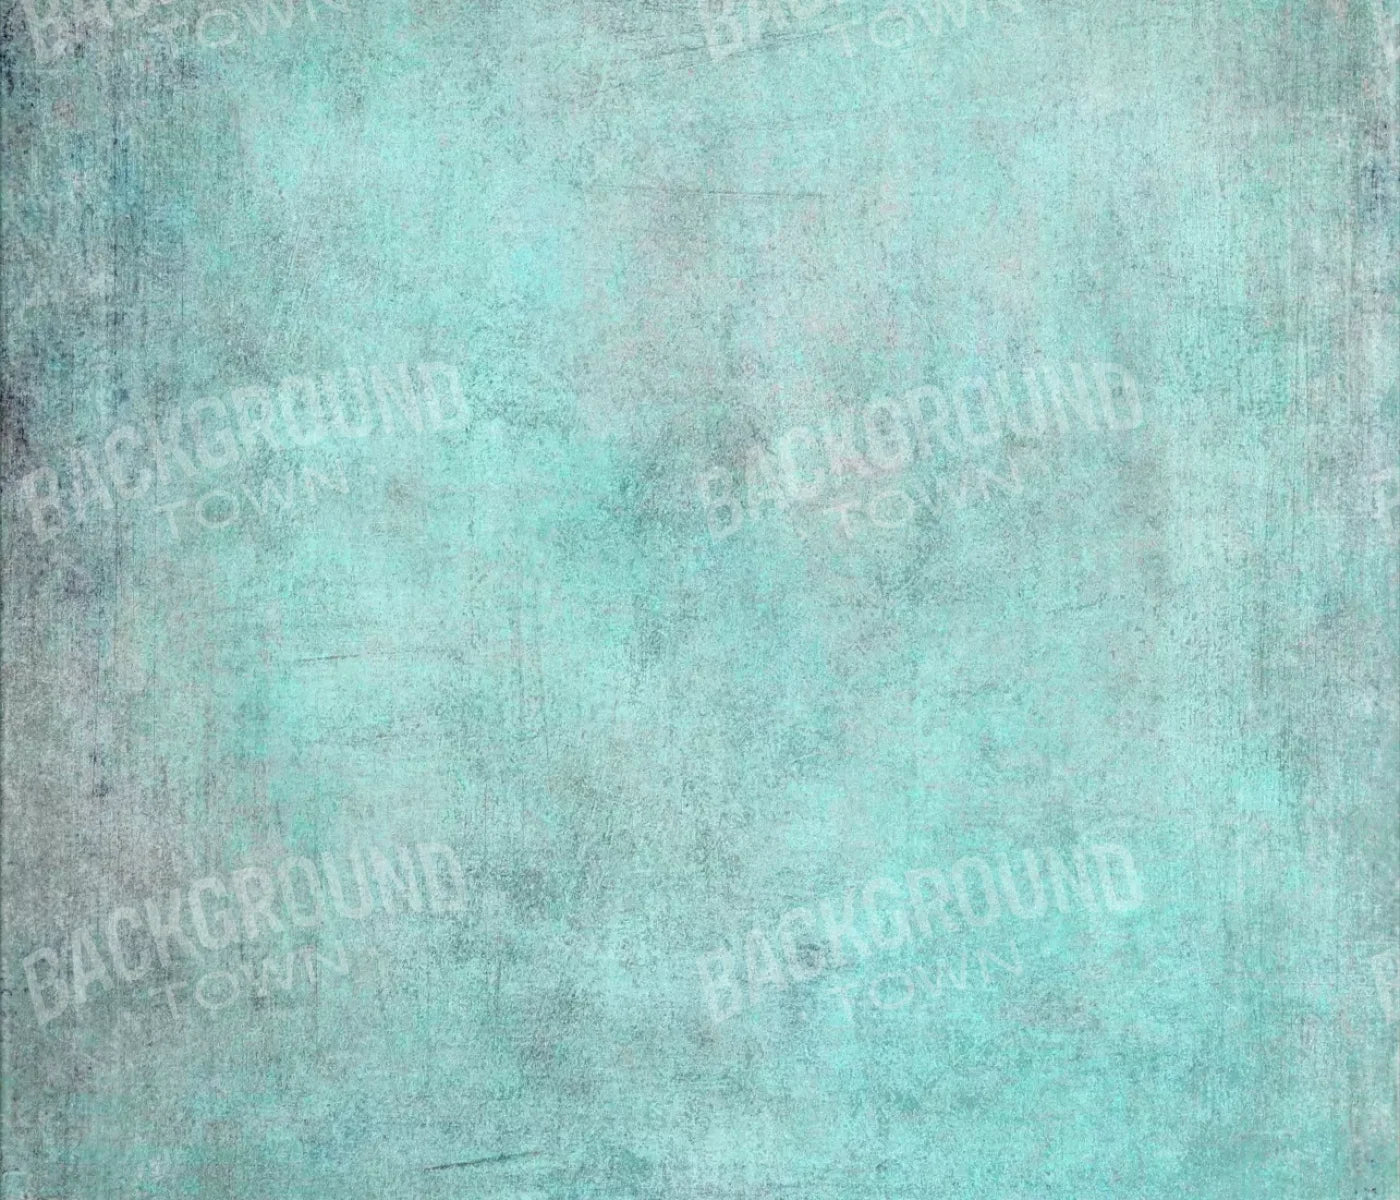 Grunge Seafoam 12X10 Ultracloth ( 144 X 120 Inch ) Backdrop